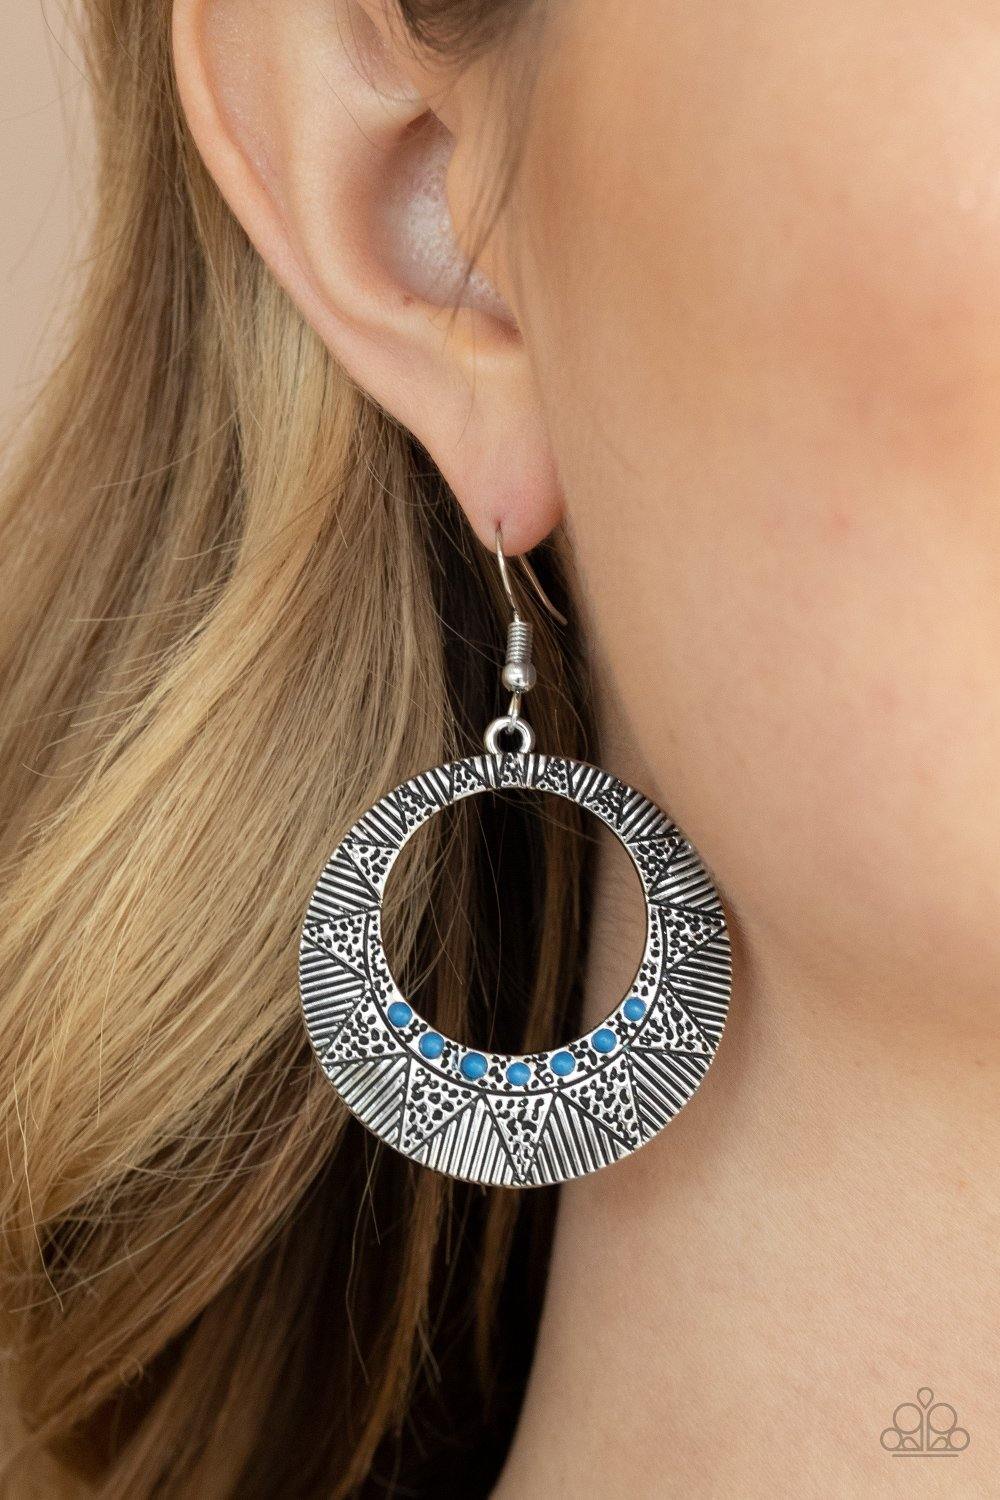 Adobe Dusk Blue Earrings - Daria's Blings N Things